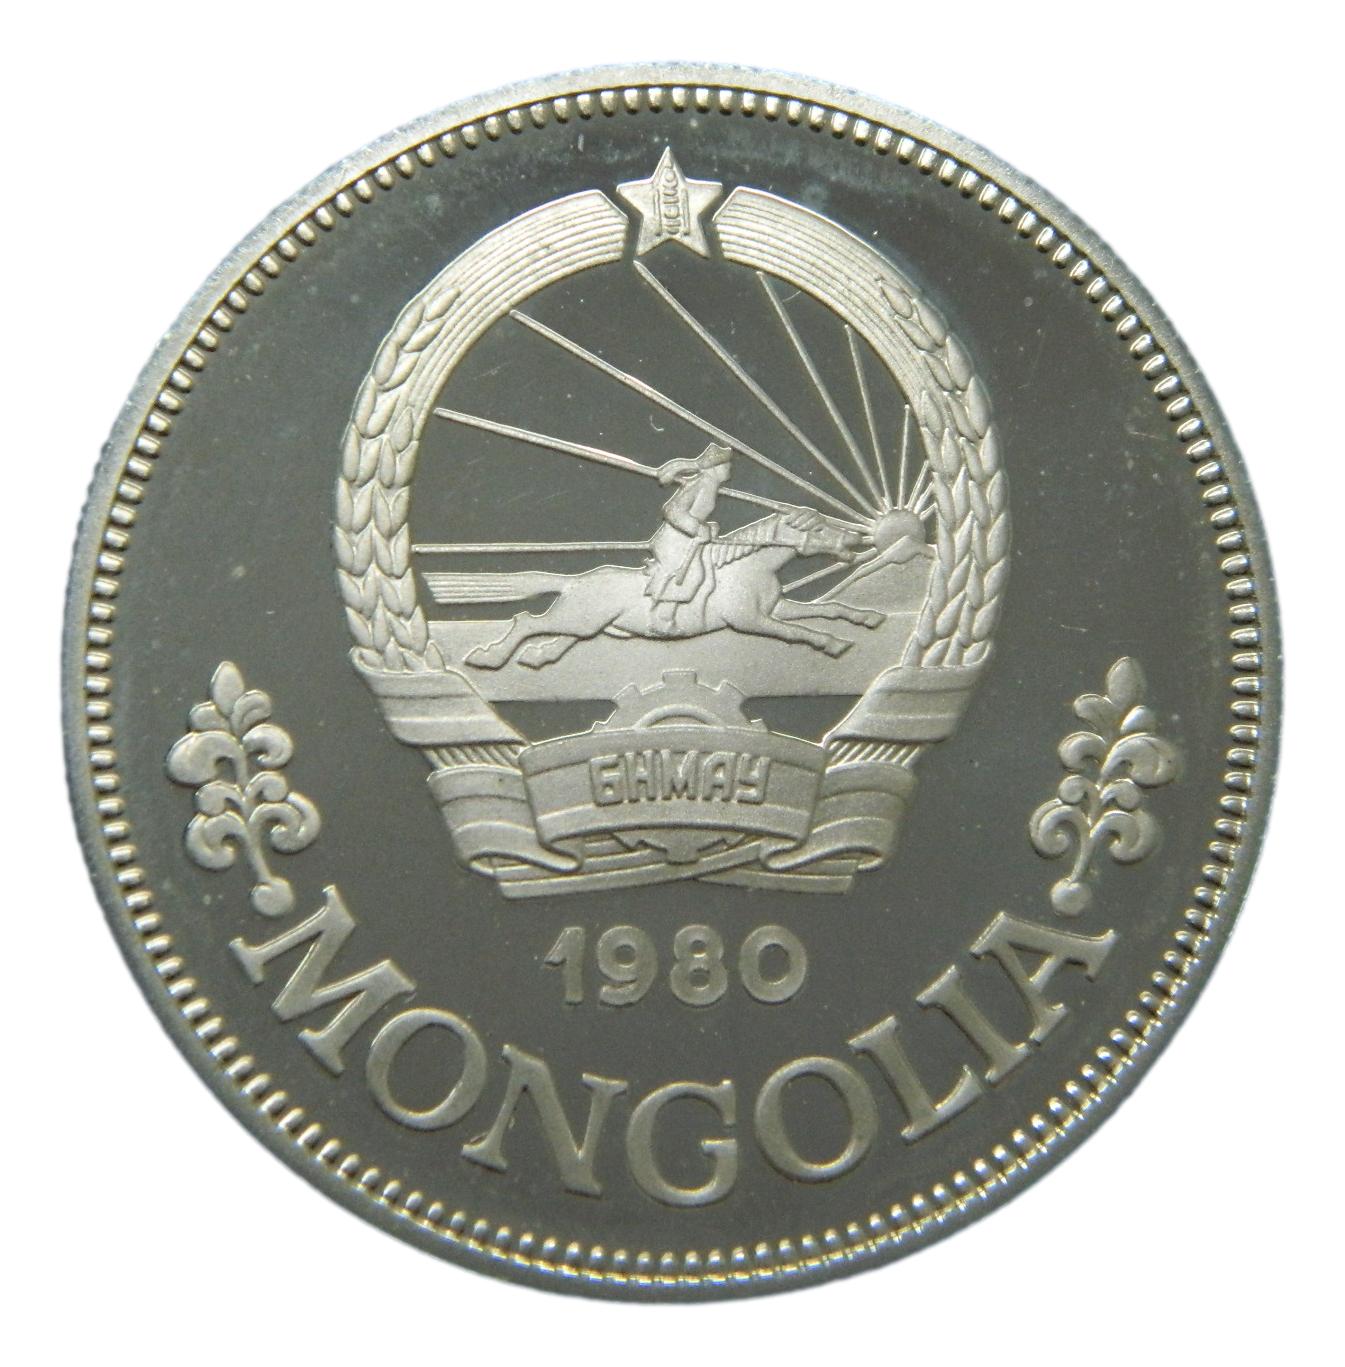 1980 - MONGOLIA - 25 TUGRIK - SAVE THE CHILDREN - PLATA